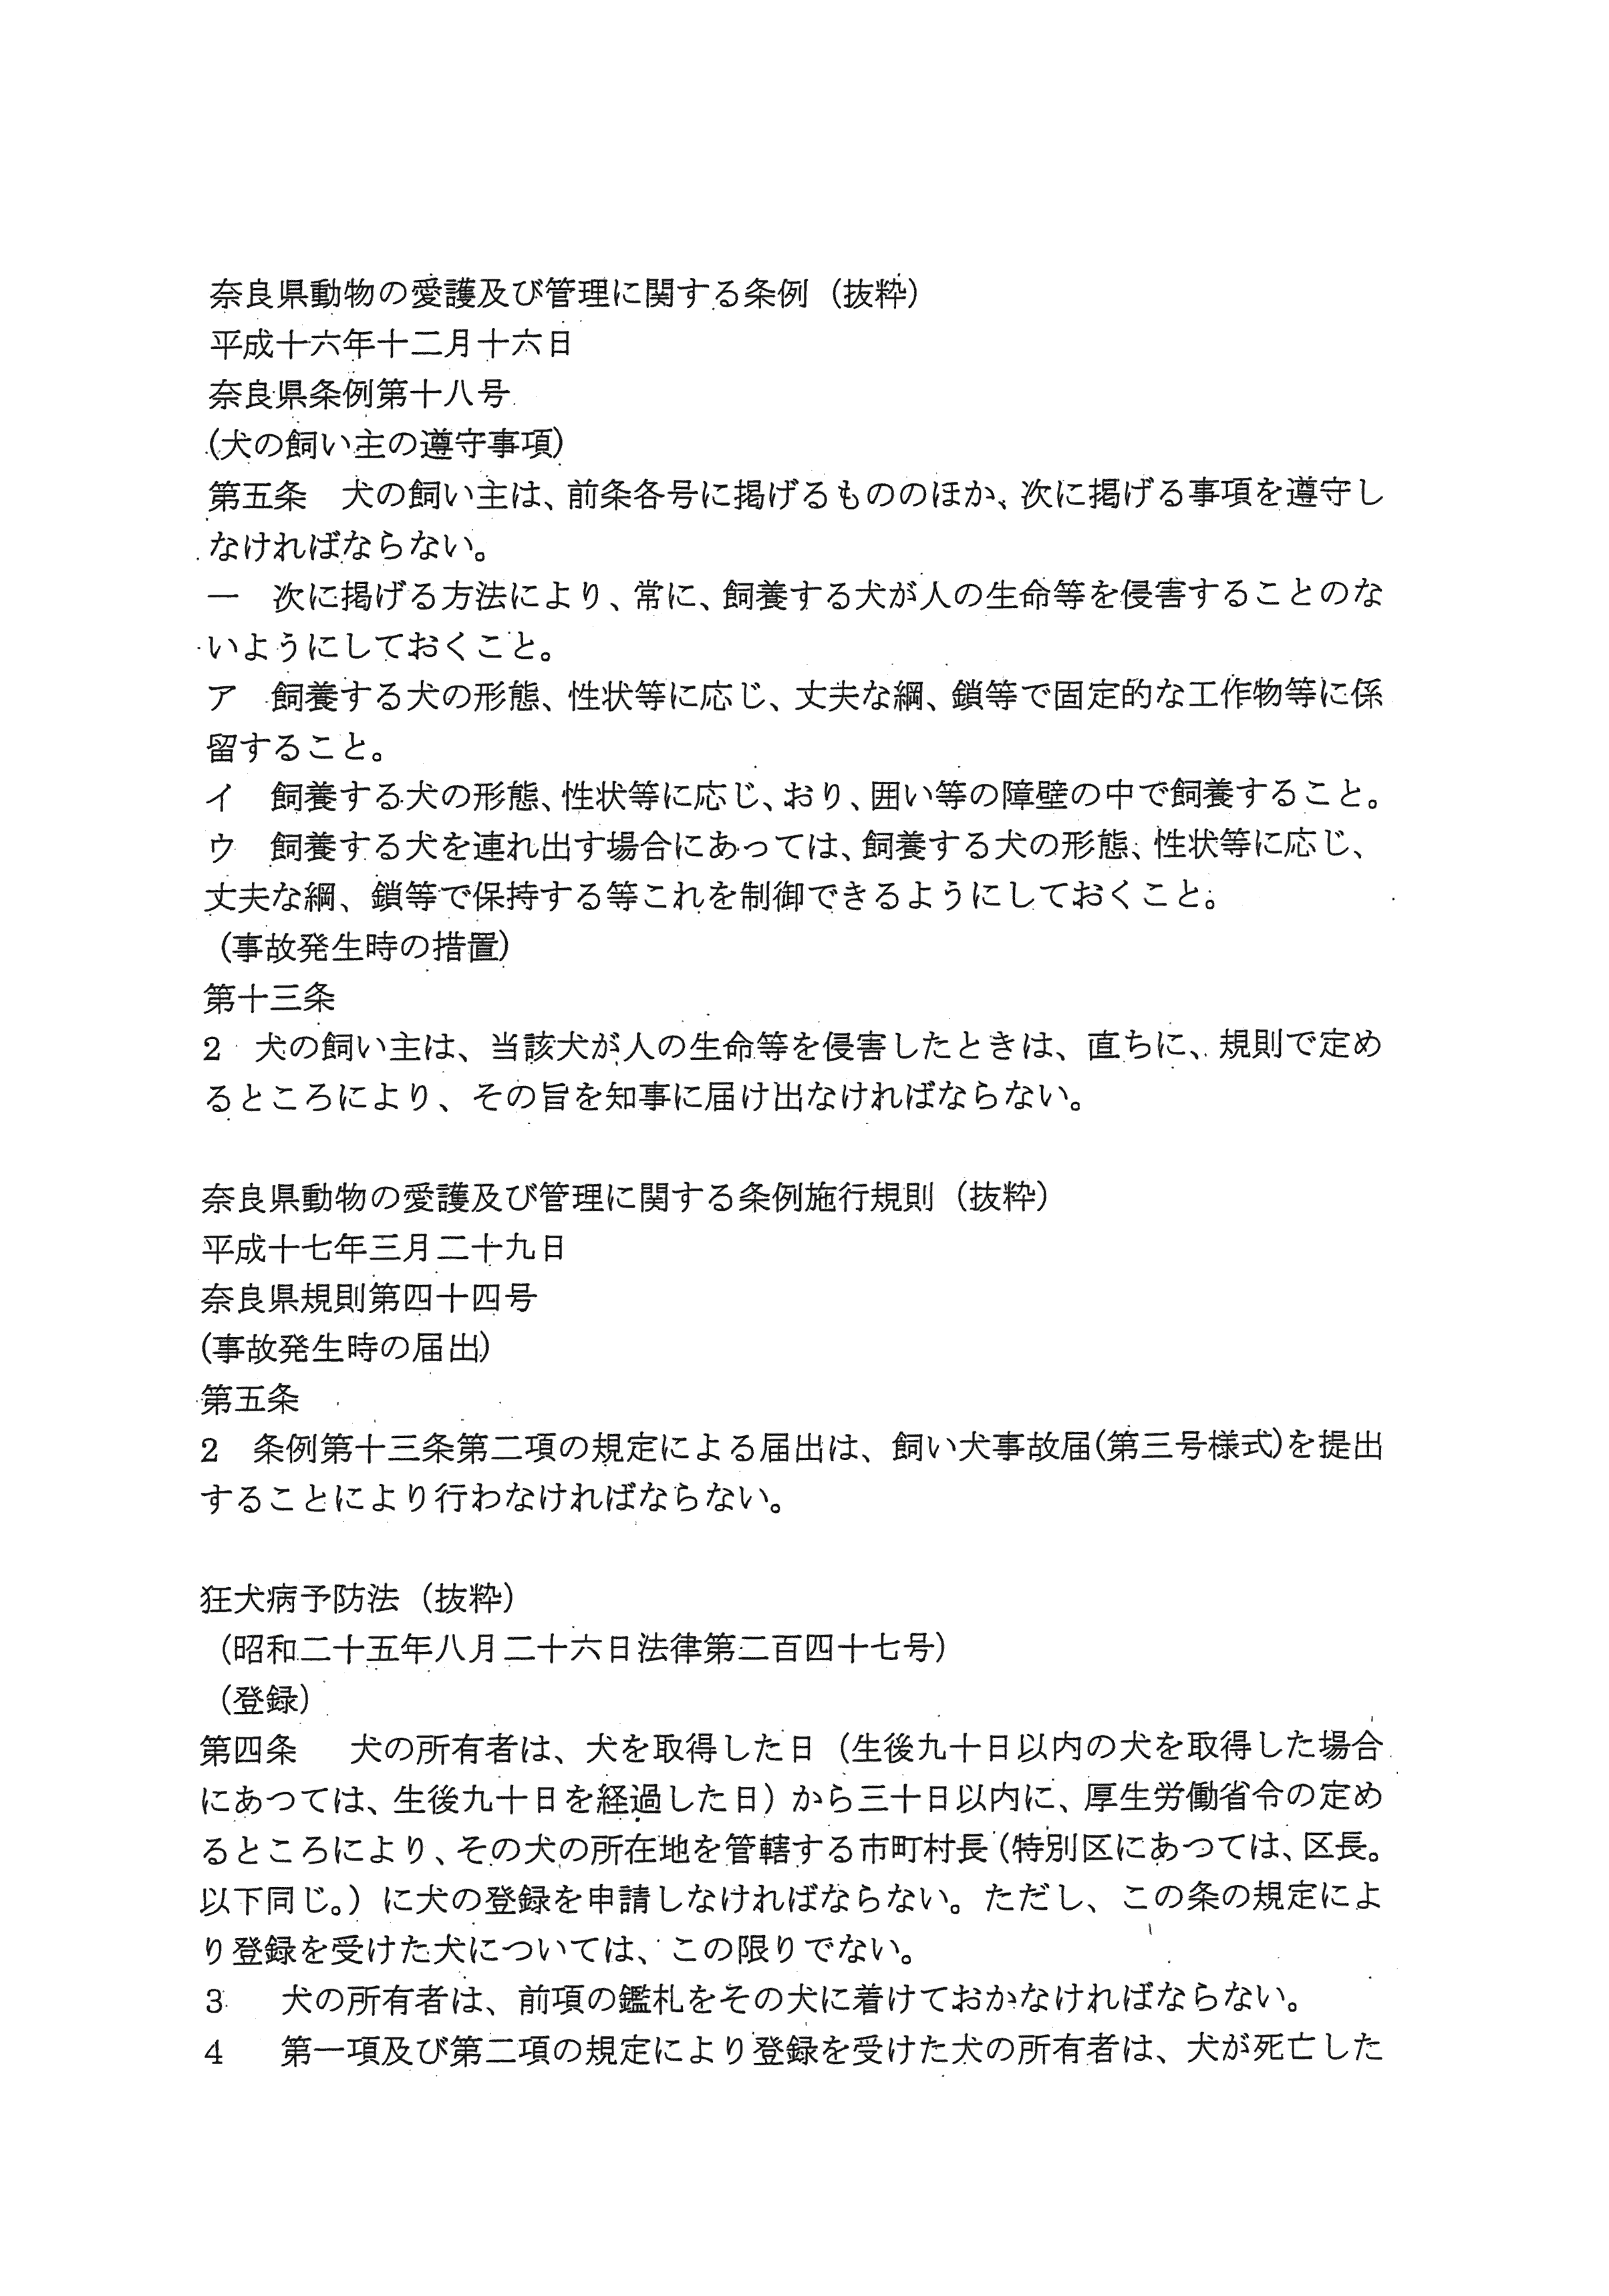 平成28年3月17日-奈良市保健所に対する要望書の手交について-04-条例